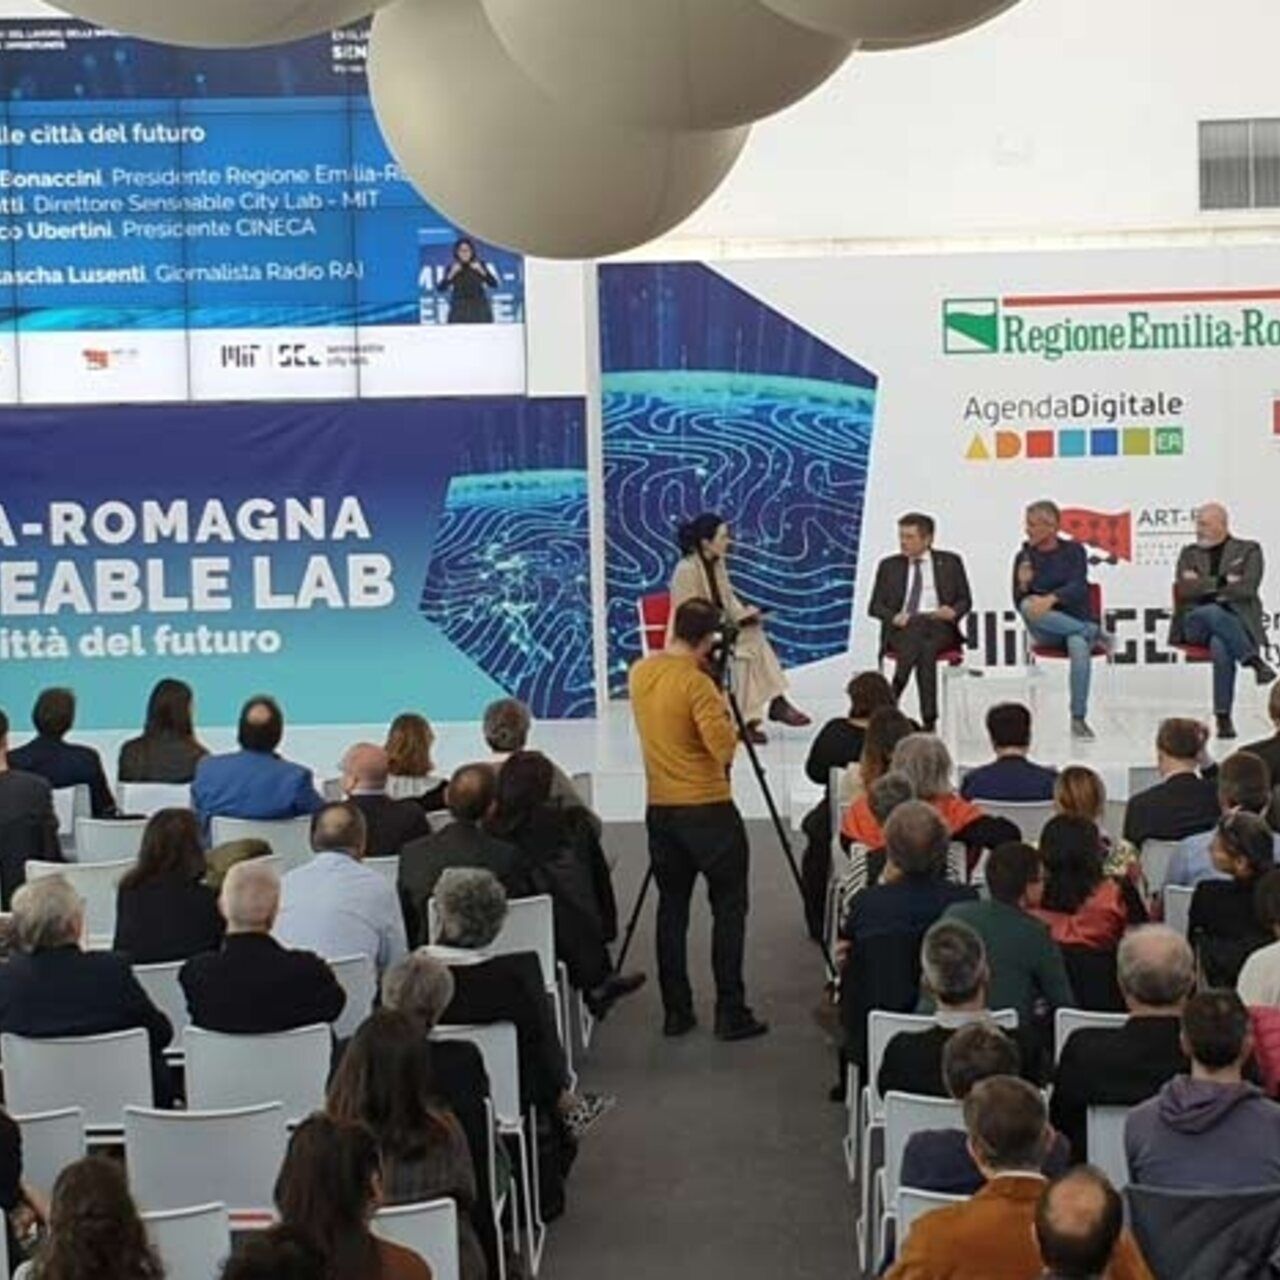 Massachusetts Institute of Technology: MIT Senseable City Lab vil ankomme Bologna Tecnopolo for å forestille seg fremtidens byer takket være samarbeidet med Emilia-Romagna-regionen